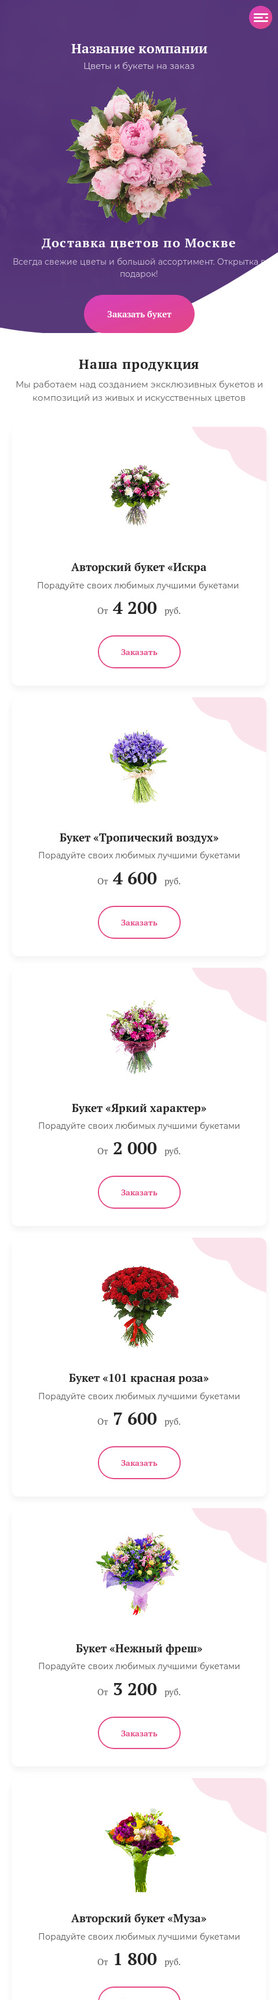 Готовый Сайт-Бизнес № 2524659 - Цветы (Мобильная версия)